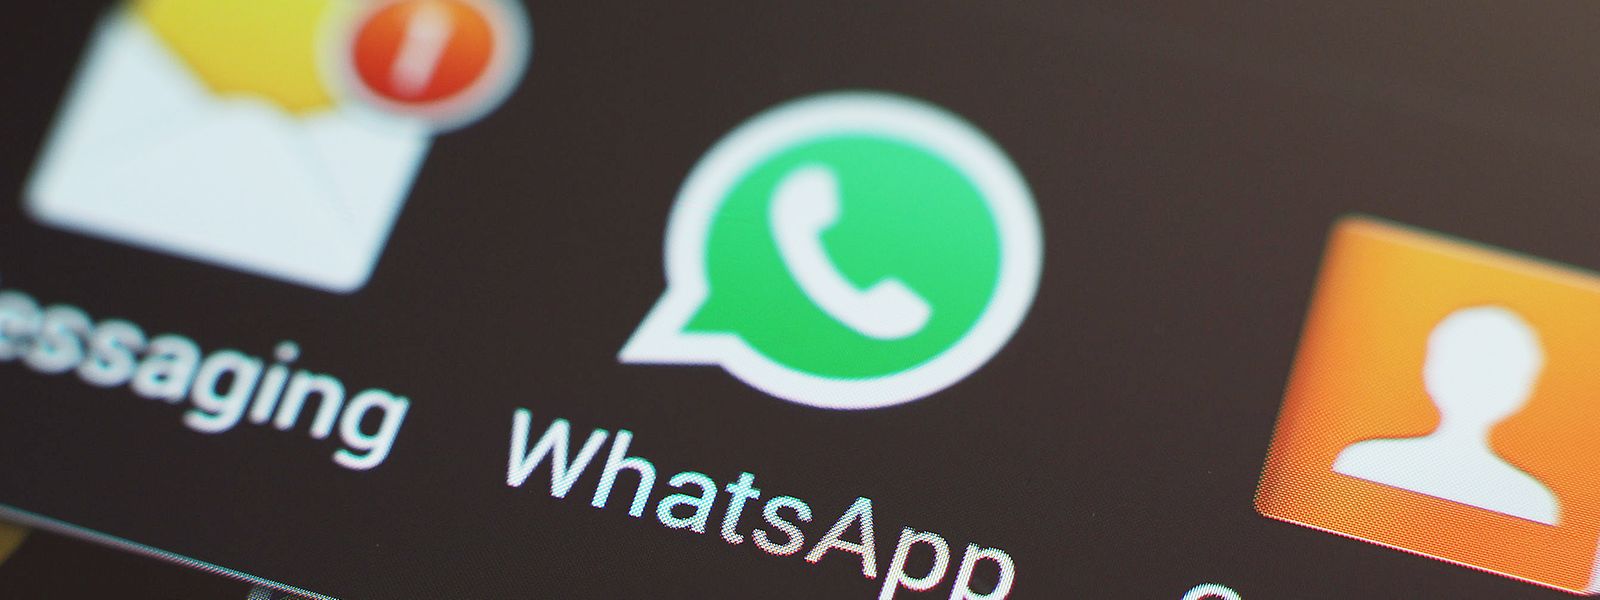 Drei von vier Smartphone-Nutzern verwenden täglich Messenger-Dienste wie WhatsApp (74 Prozent), wie der Statec mitteilt.